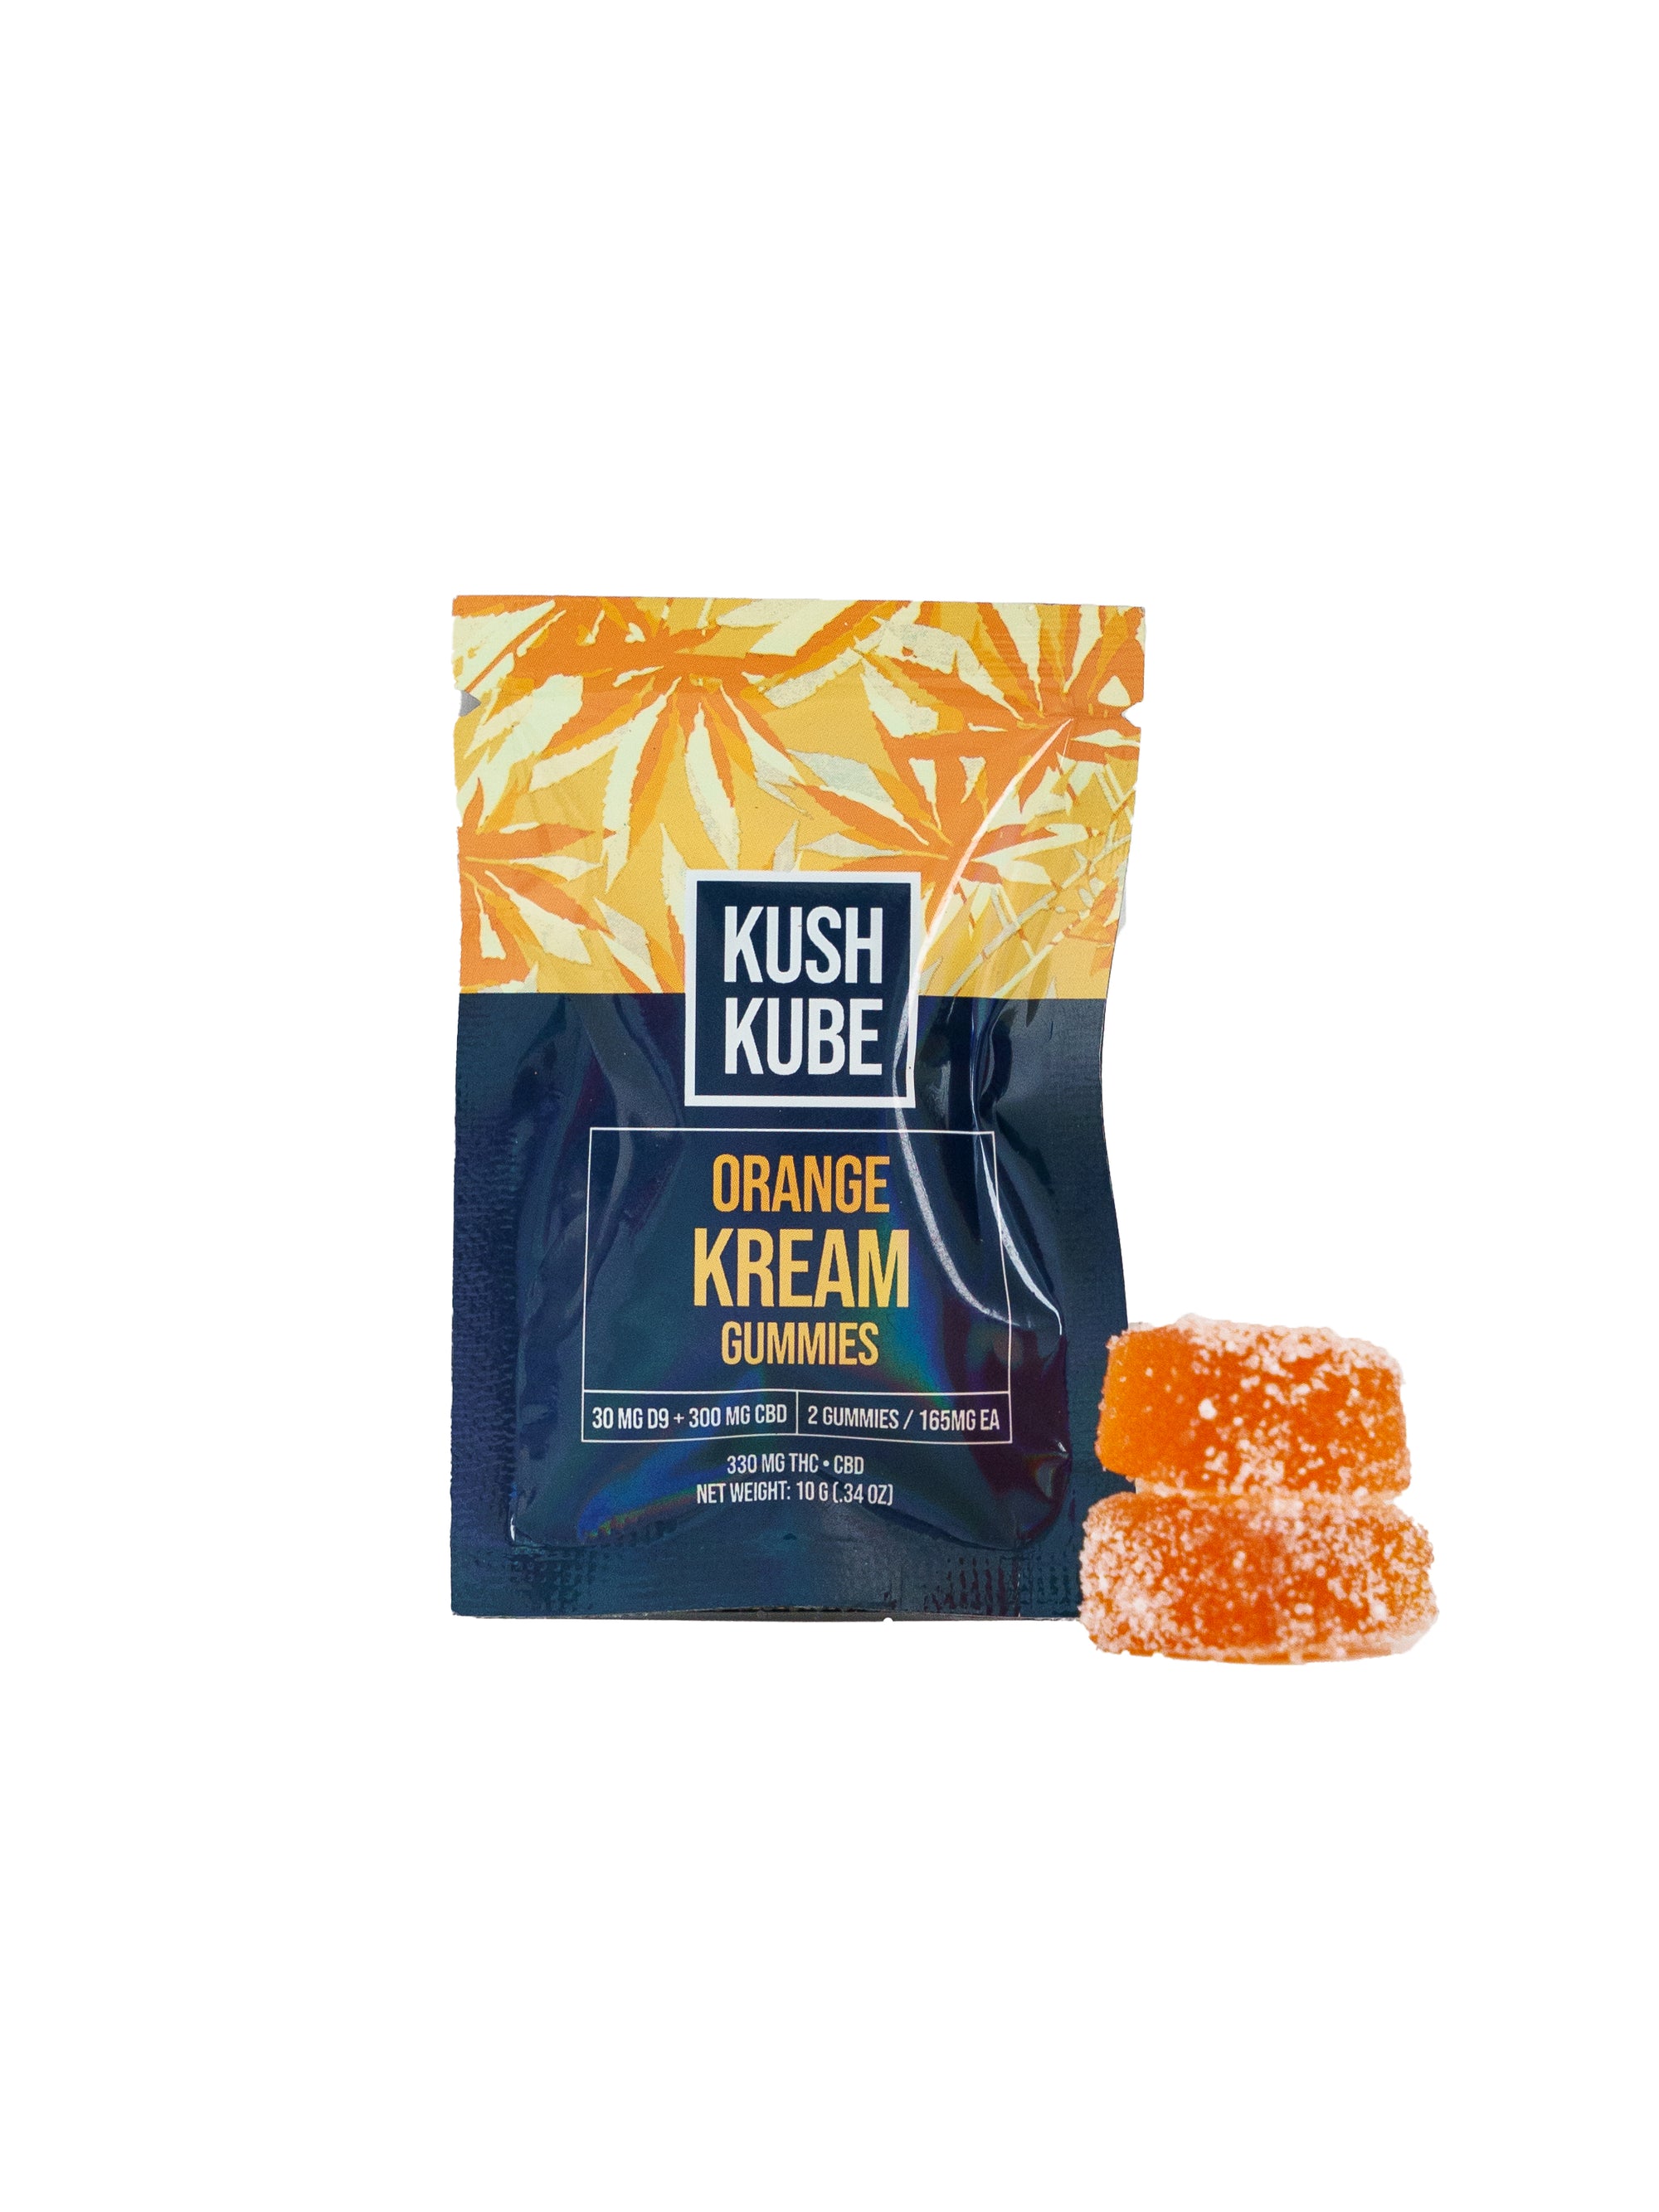 Orange Kream - 2 Gummy Pack